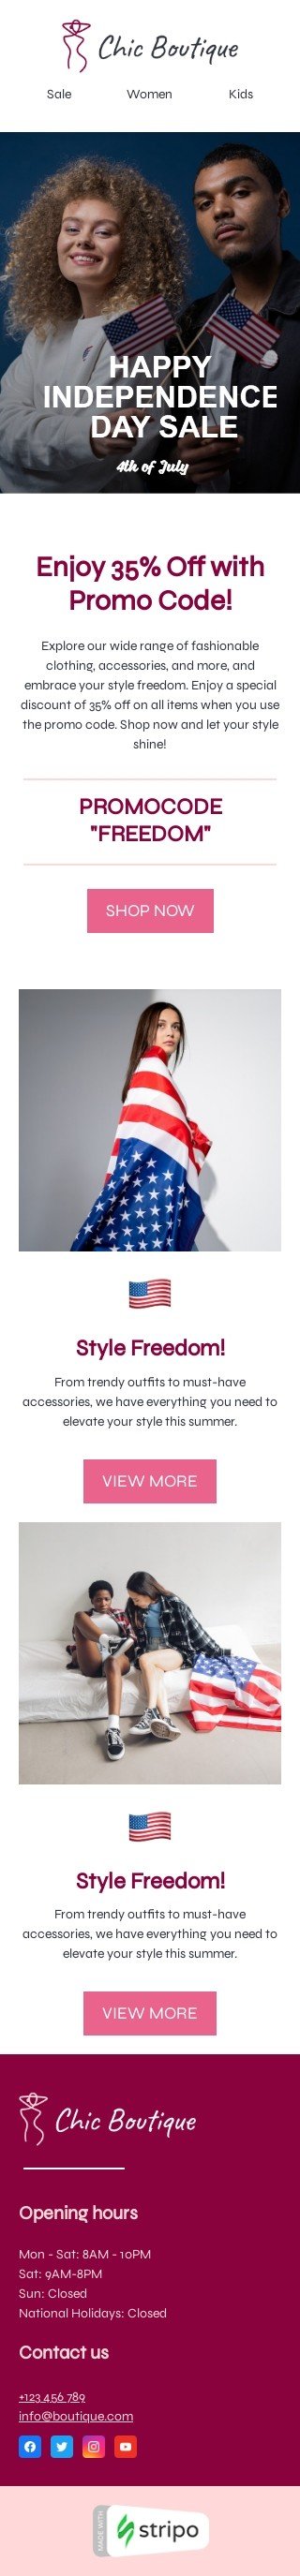 Modelo de e-mail de «Liberdade de estilo» de Dia da Independência para a indústria de moda Visualização de dispositivo móvel